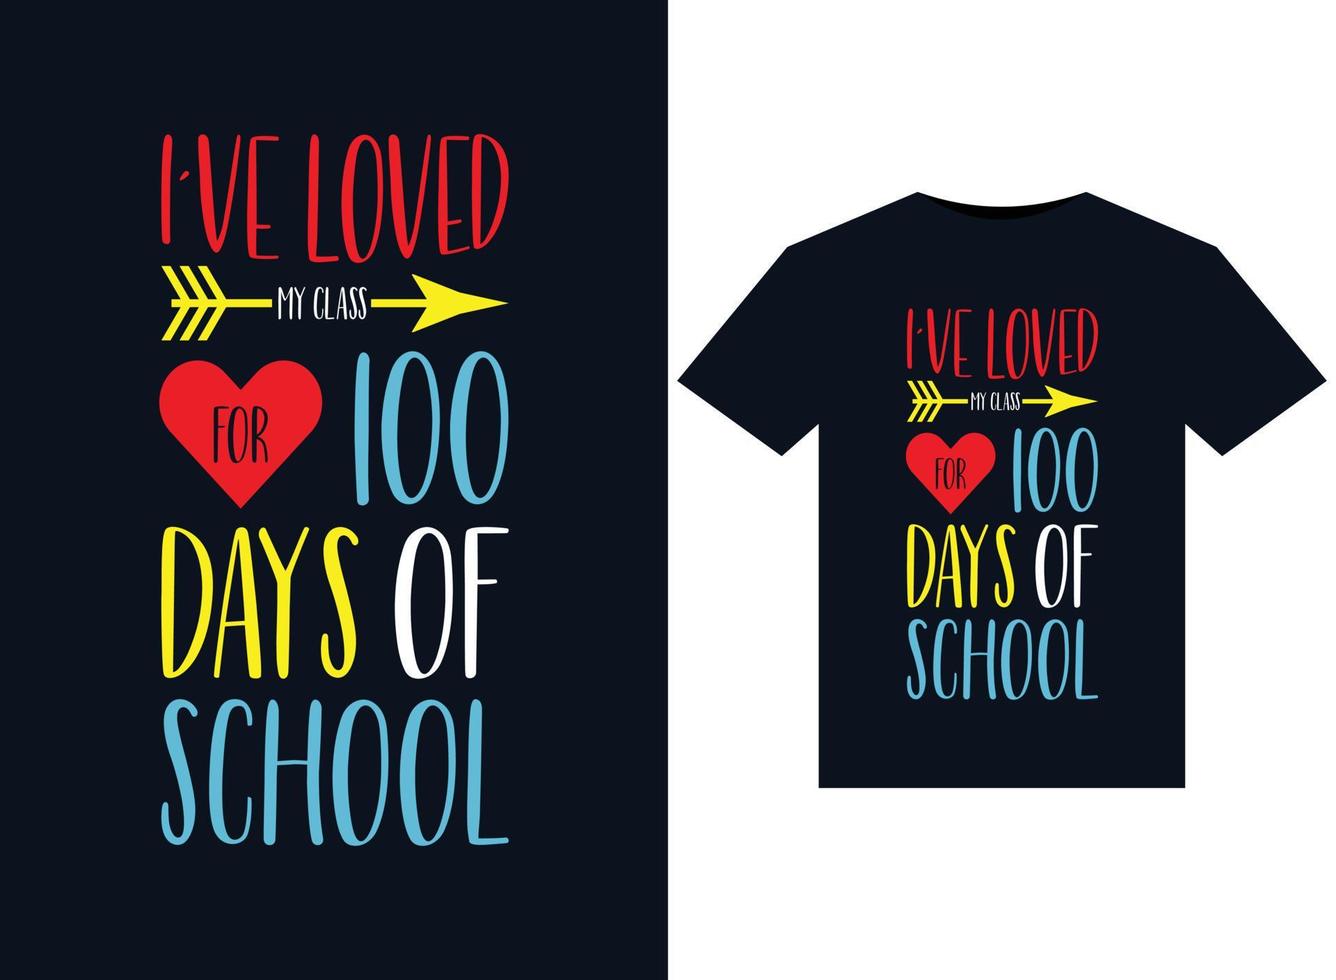 ich liebe meine klasse seit 100 tagen mit schulillustrationen für druckfertige t-shirt-designs vektor